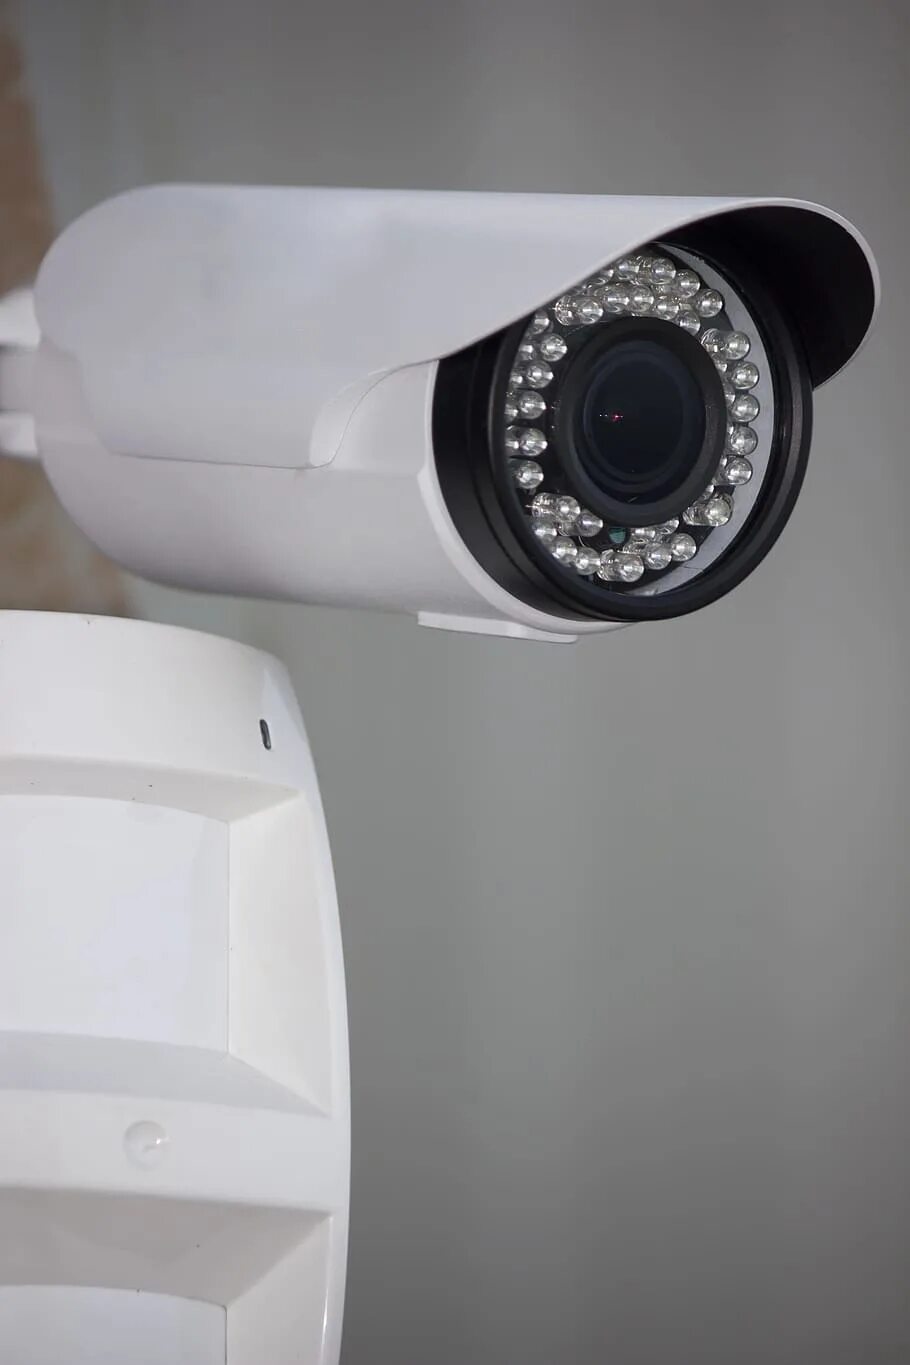 Черно белая камера видеонаблюдения. Камера видеонаблюдения. Камеры видео наблюдения. CCTV видеонаблюдение. ИК подсветка для камеры видеонаблюдения.